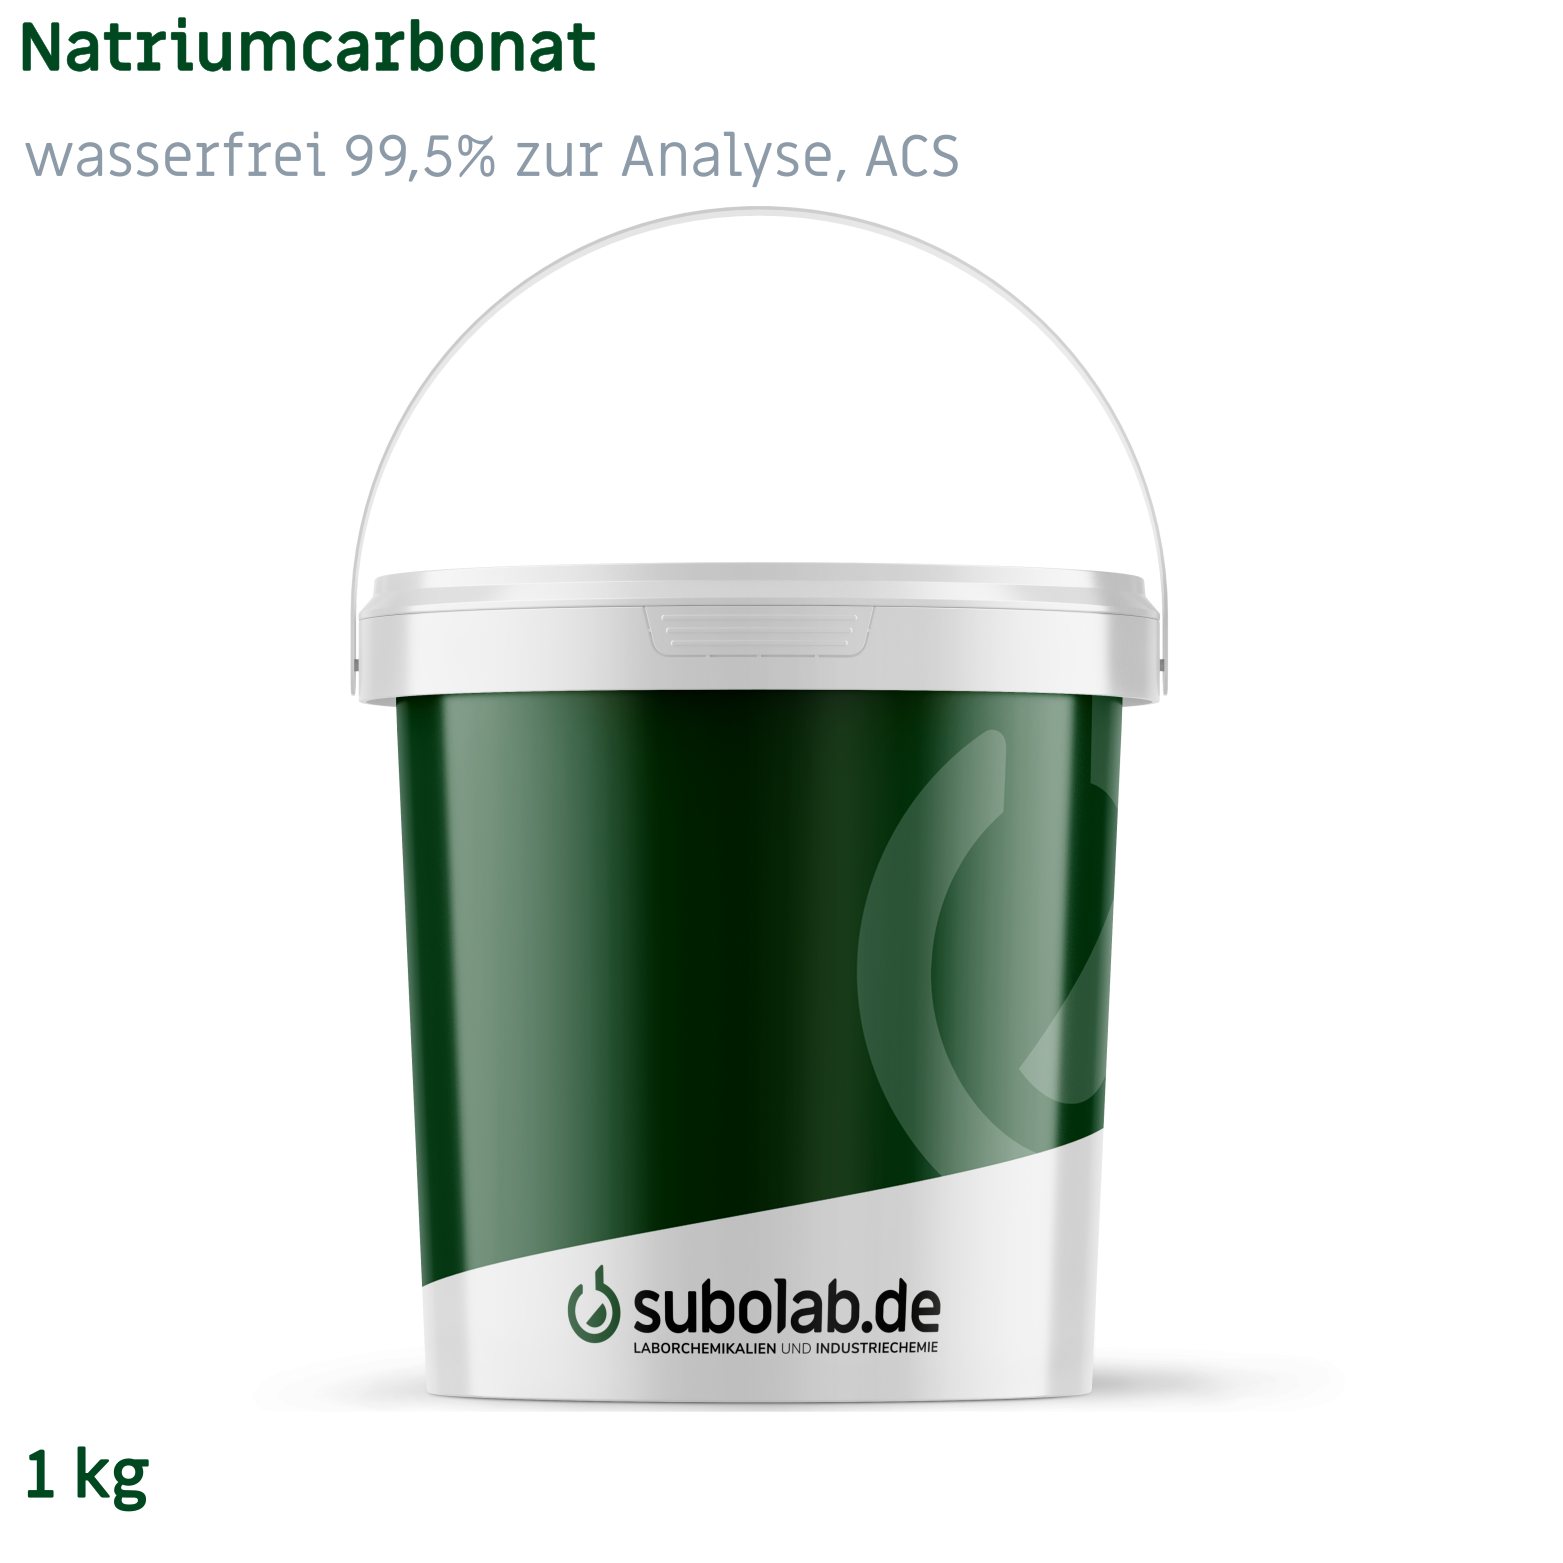 Bild von Natriumcarbonat - wasserfrei 99,5% zur Analyse, ACS (1 kg)